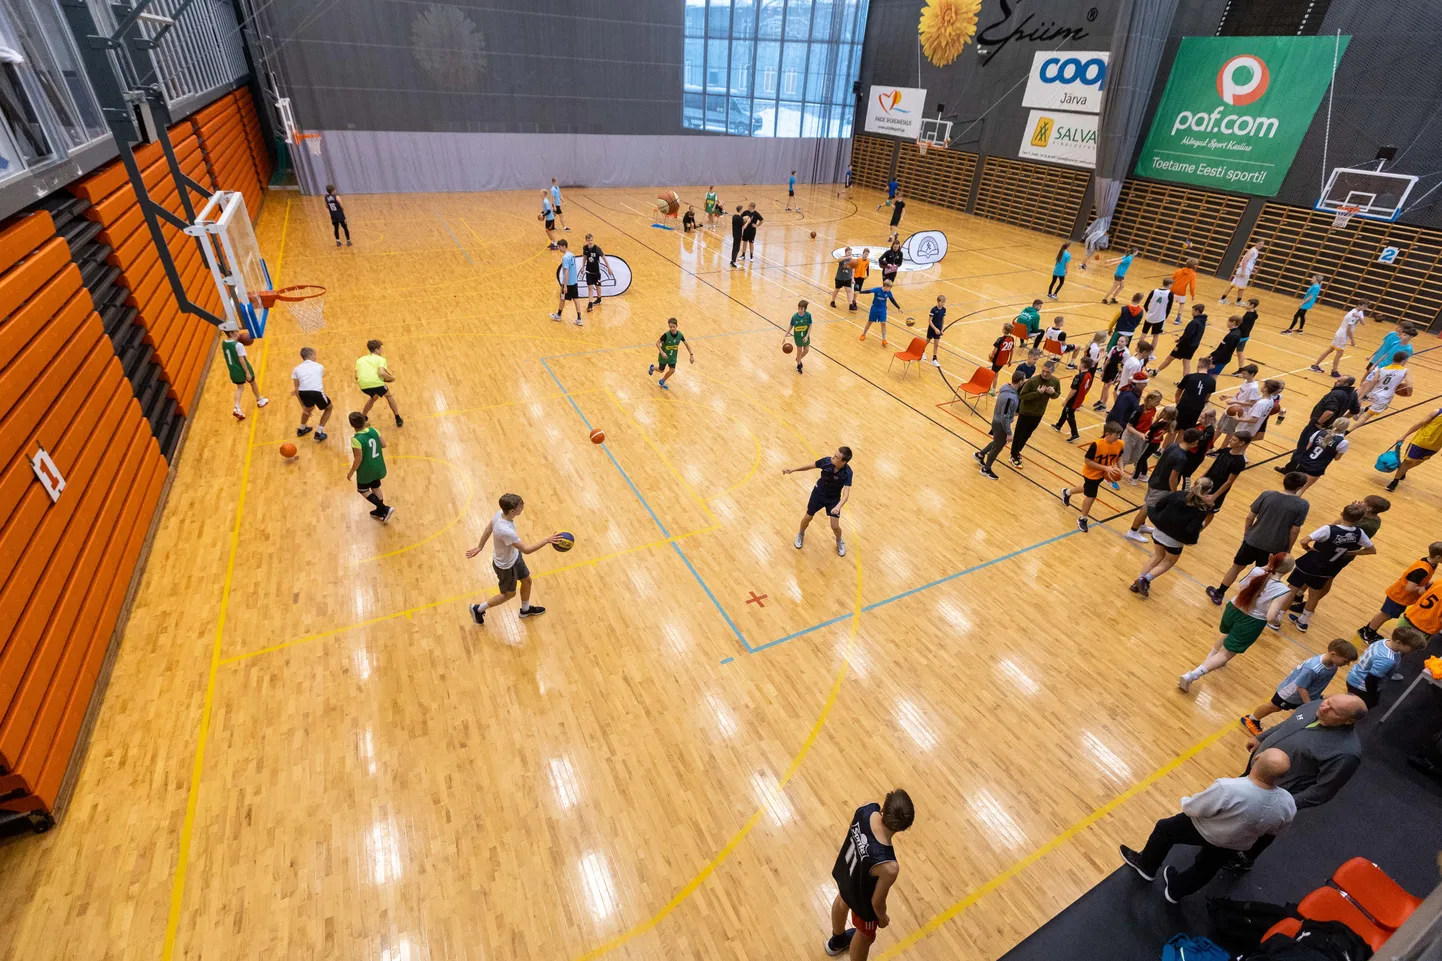 Paide E-piima spordihallis toimus korvpalli 3x3 võistluste piirkondlik etapp, kus osalesid ka Järvamaa koolid